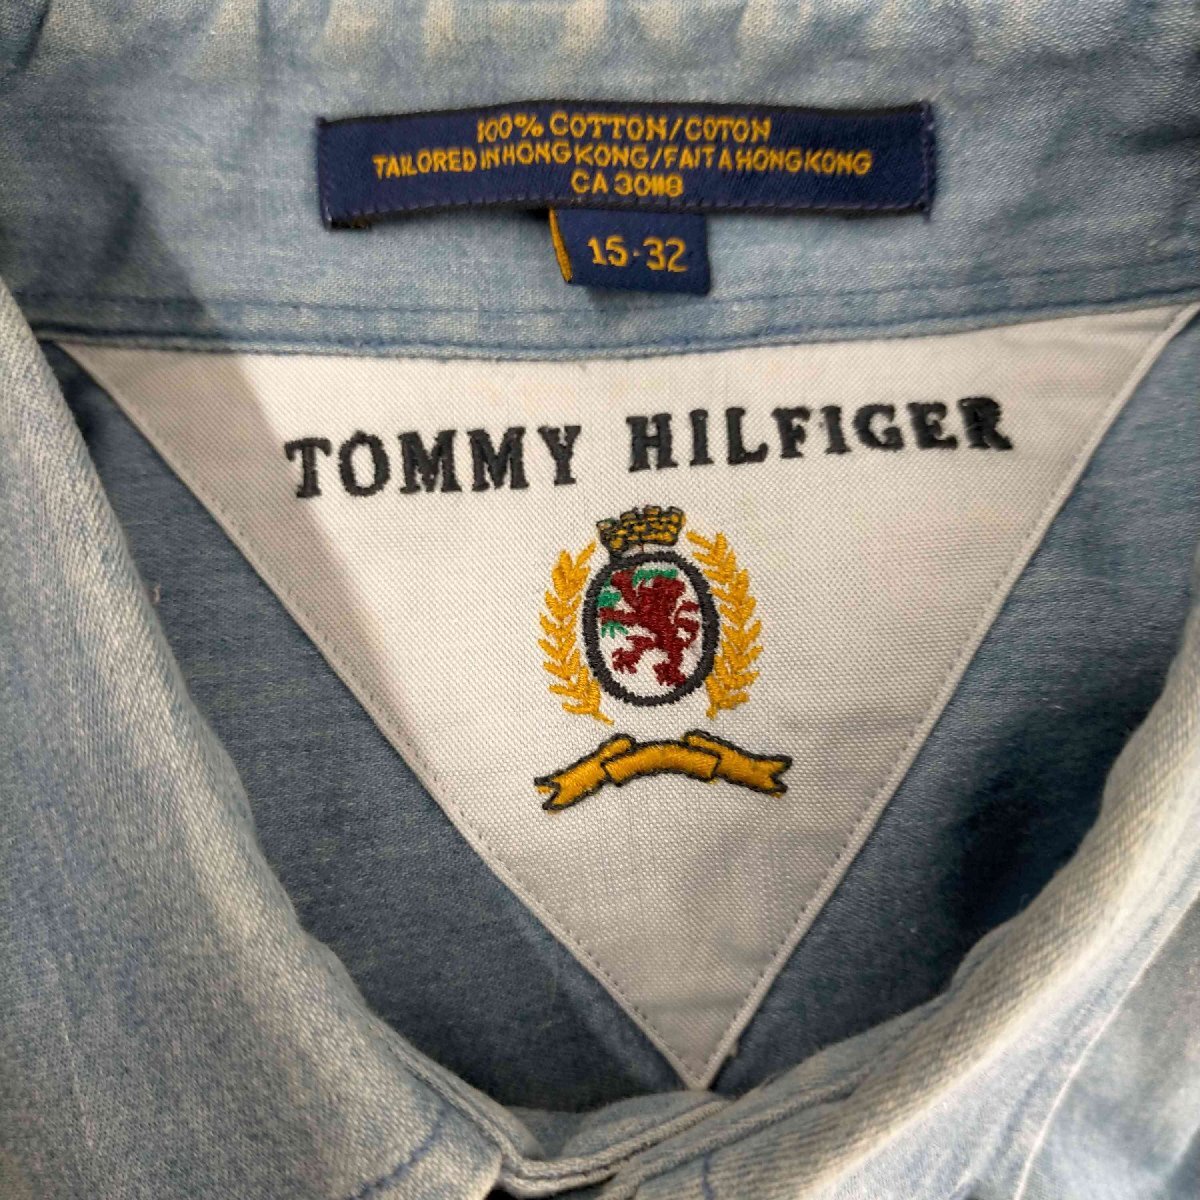 TOMMY HILFIGER(トミーヒルフィガー) 香港製 ボタンダウン シャンブレーシャツ メンズ im 中古 古着 0625_画像6